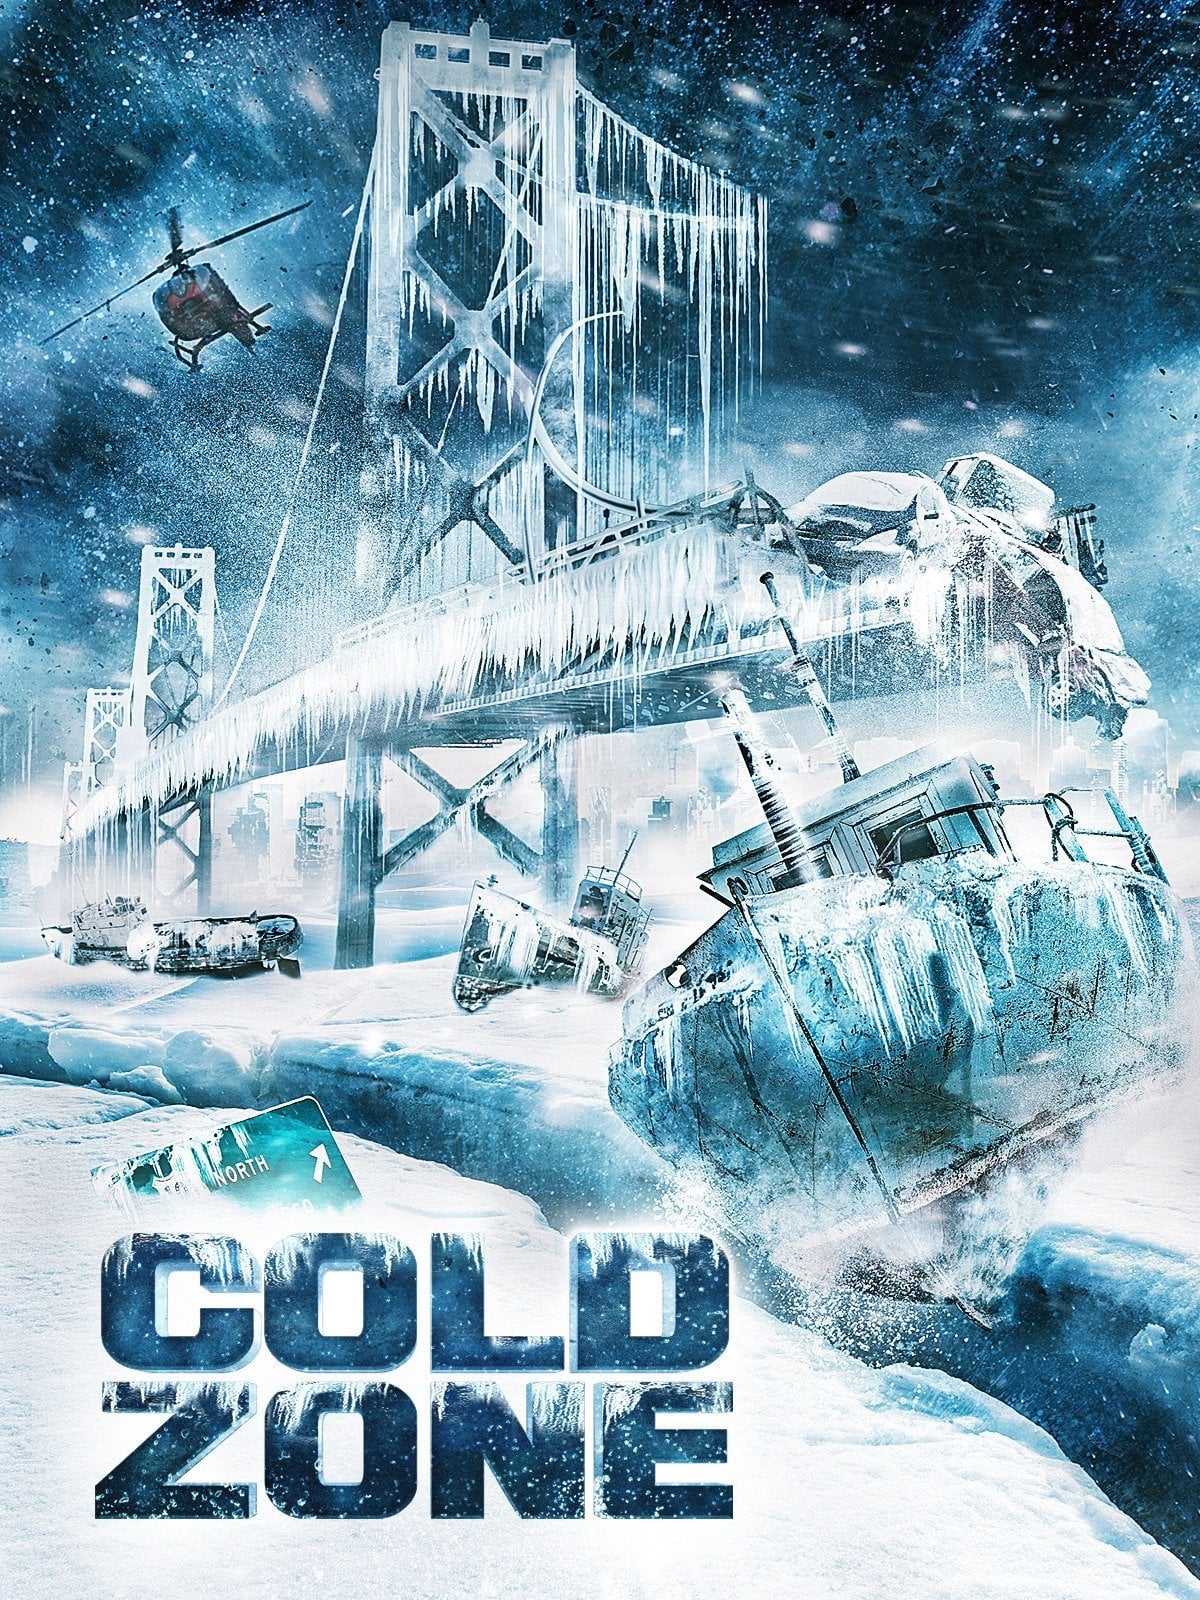 Cold Zone - Die neue Eiszeit (2017)